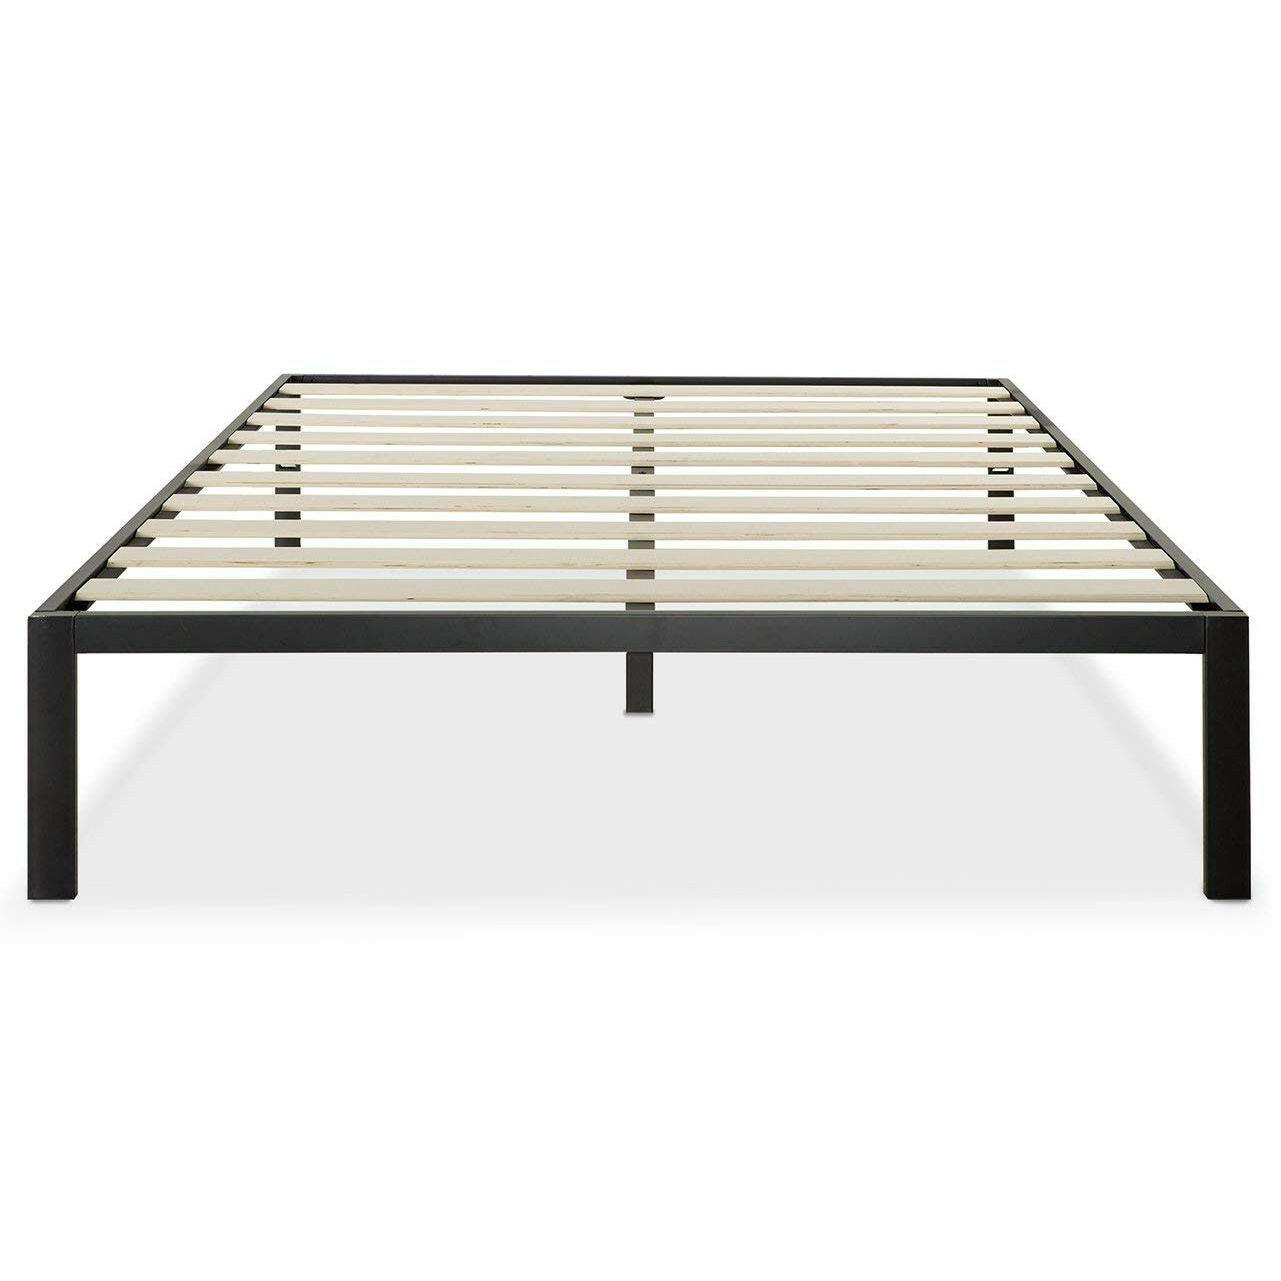 Full Size Modern Black Metal Platform Bed Frame with Wood Slats - FurniFindUSA